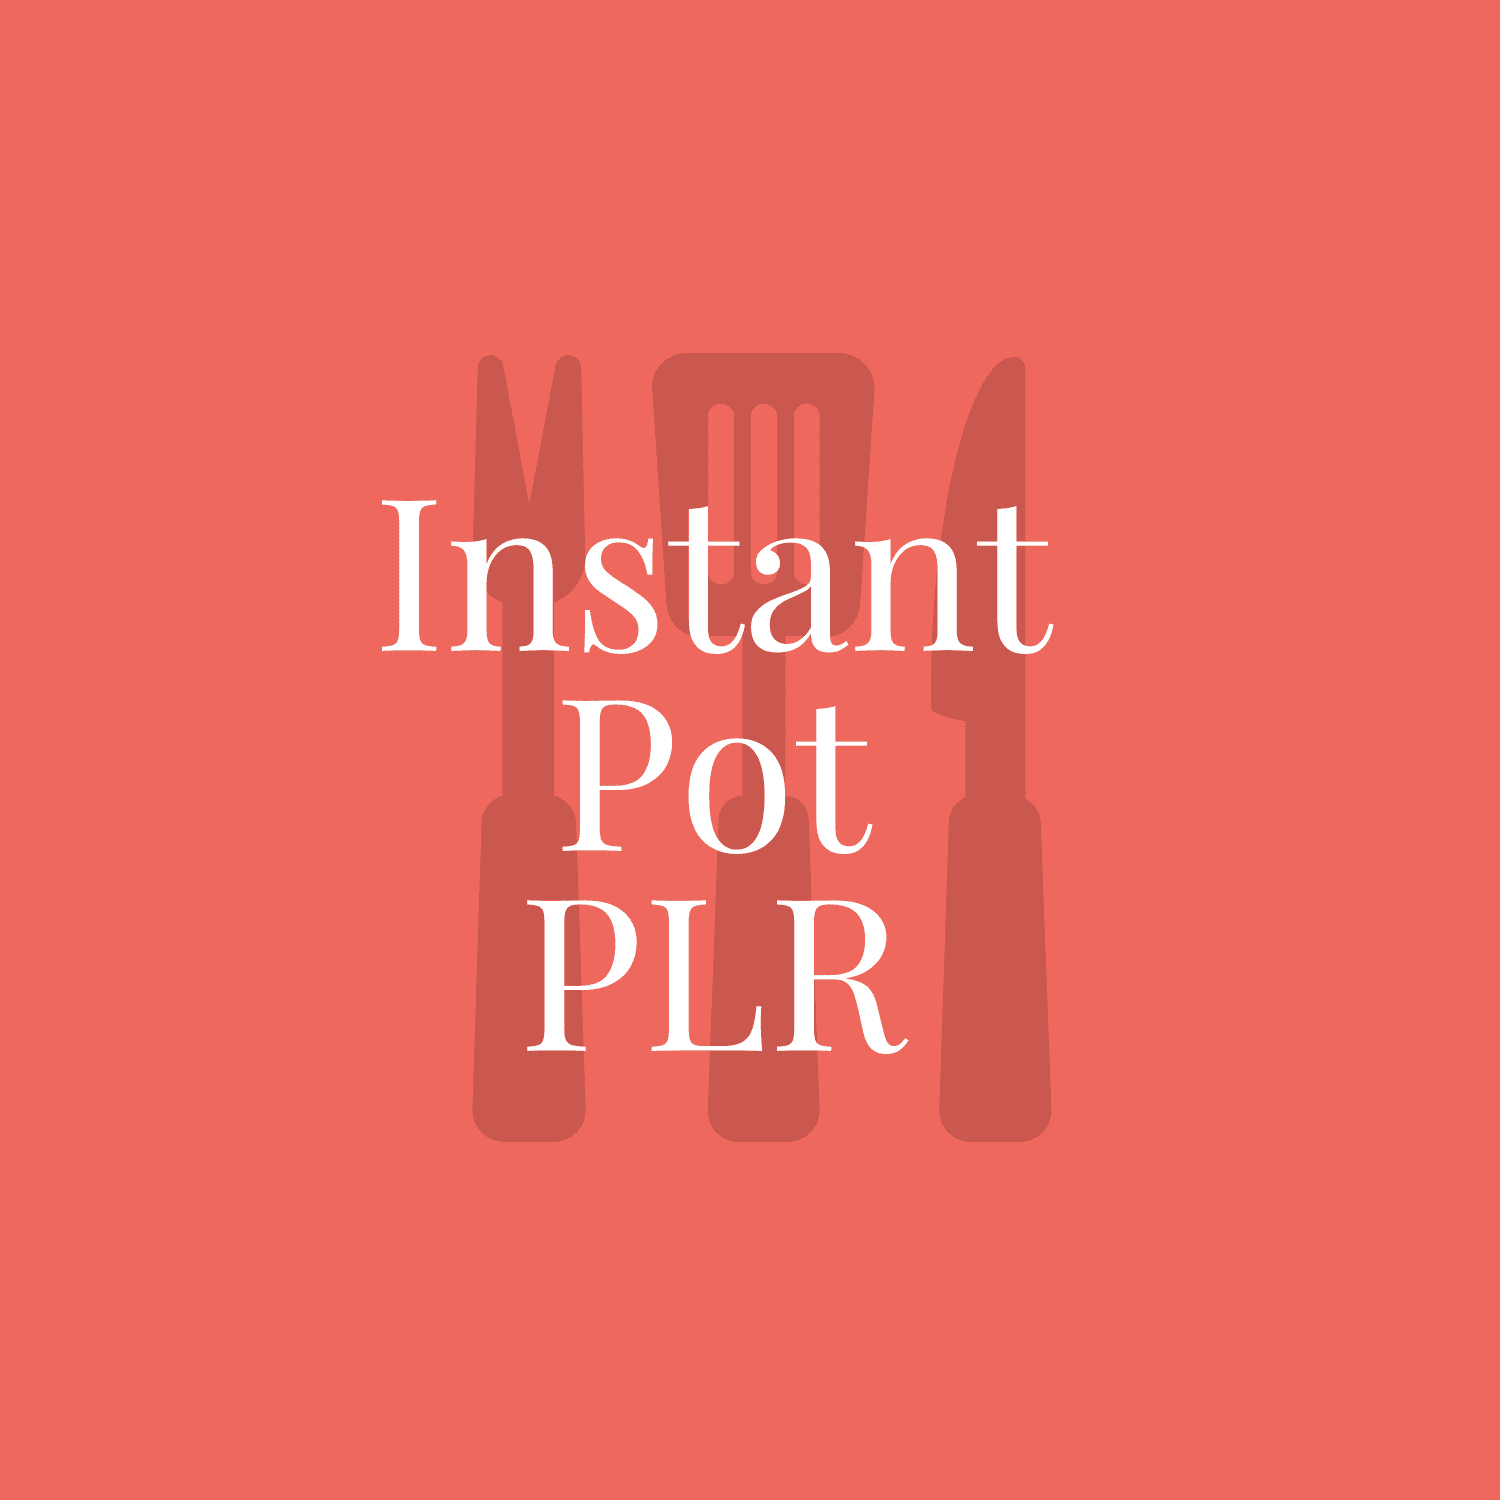 Instant Pot PLR